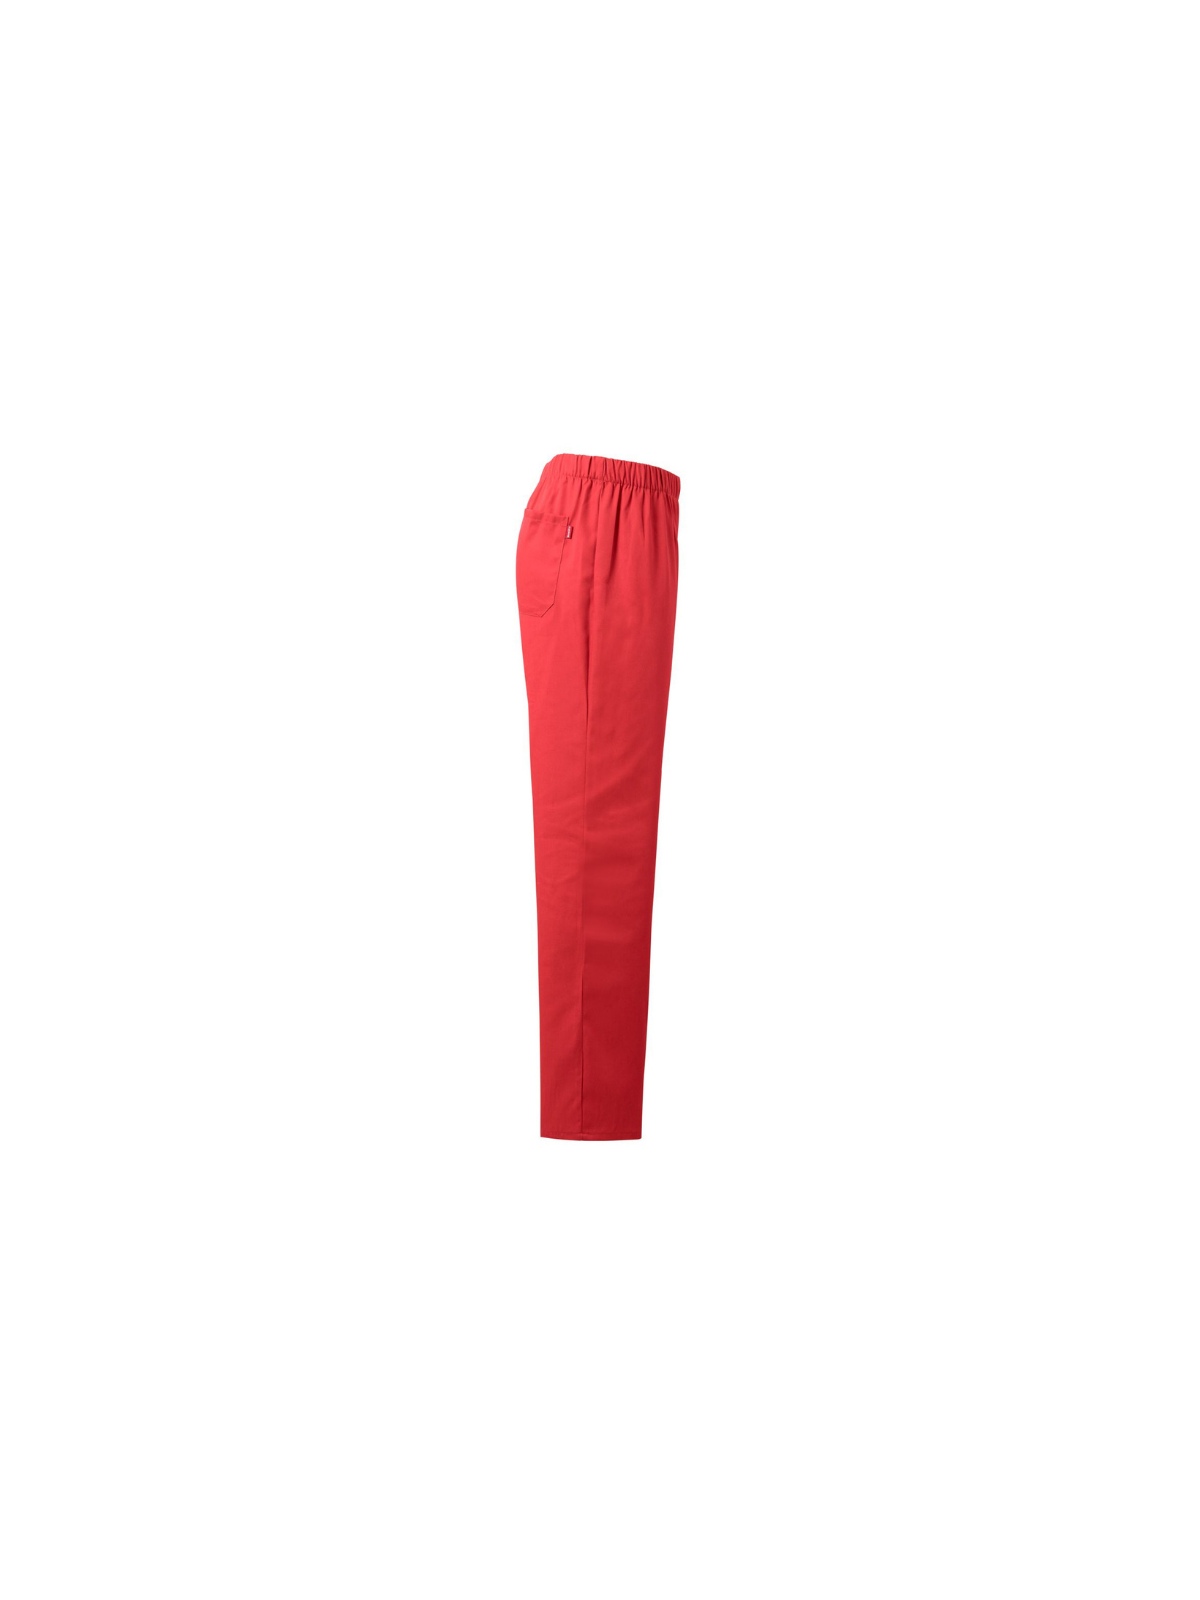 Pantalón  sanitario Velilla rojo coral